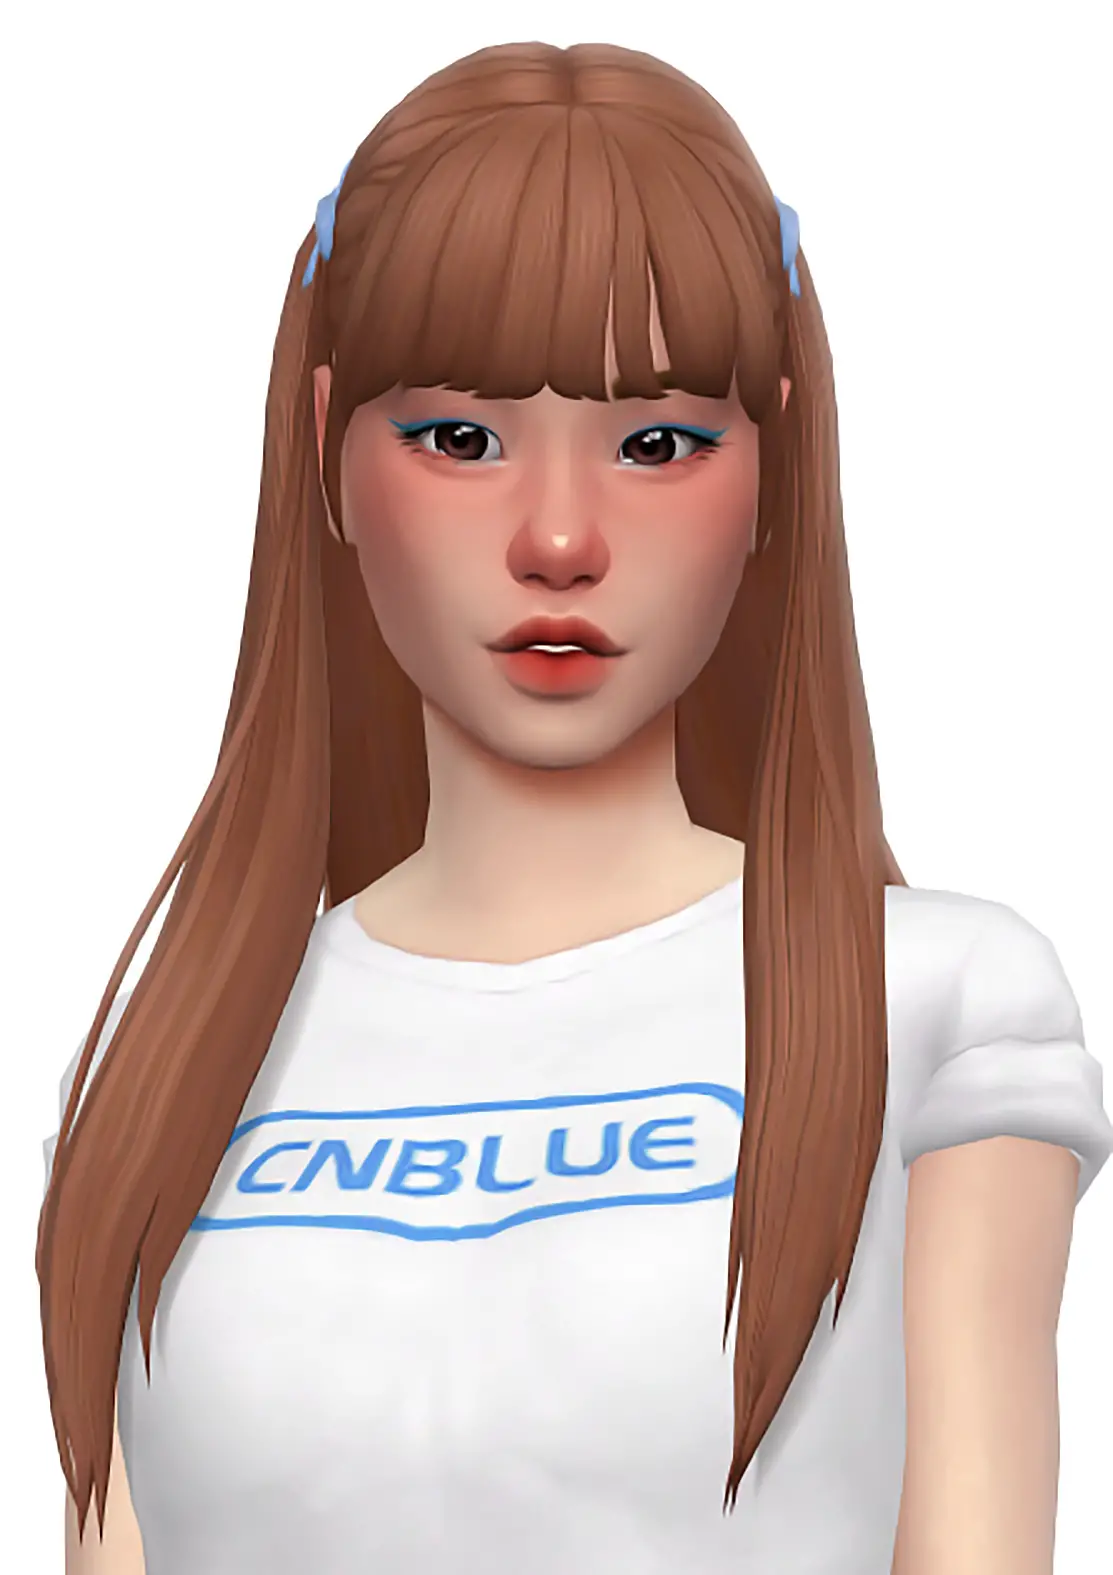 Sims 4 Hairs Simandy The Cutest Hair